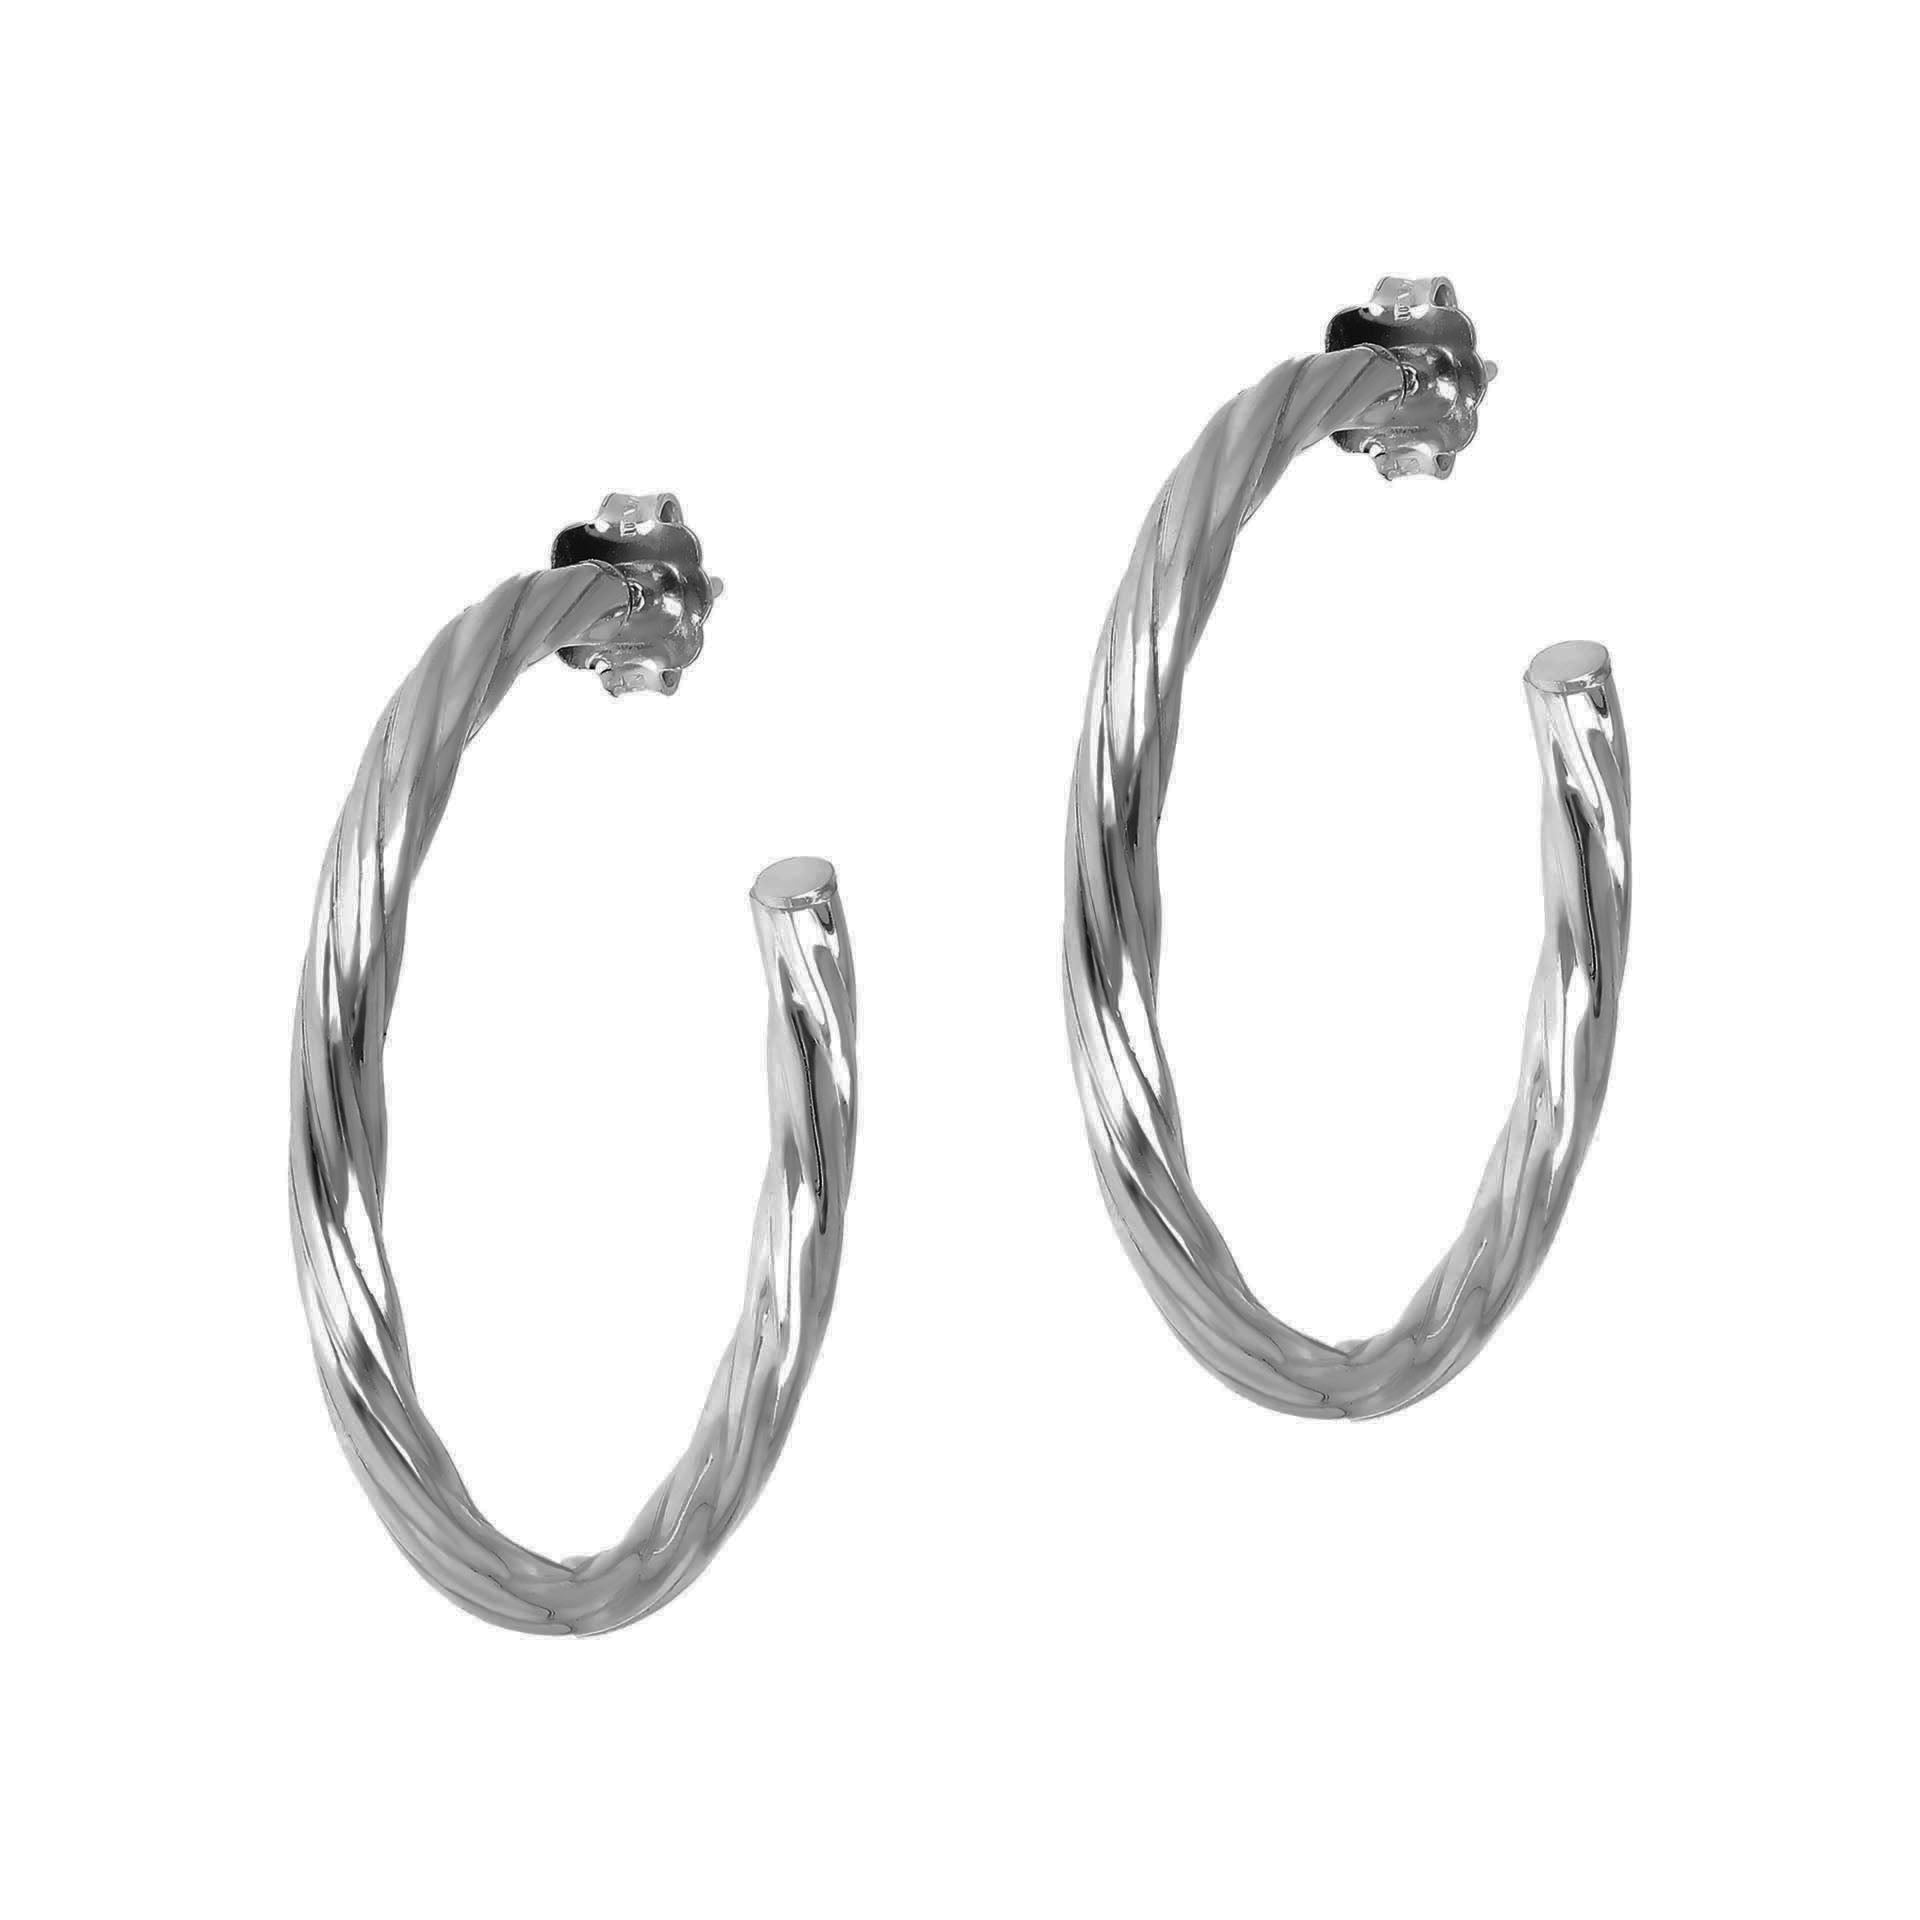 Buy Sterling Silver Hoop Earrings, Silver Big Hoop Earrings, Minimalist  Earrings, Ring Earrings, Big Ring Earrings, Big Circle Earrings, Silver  Online in India - Etsy